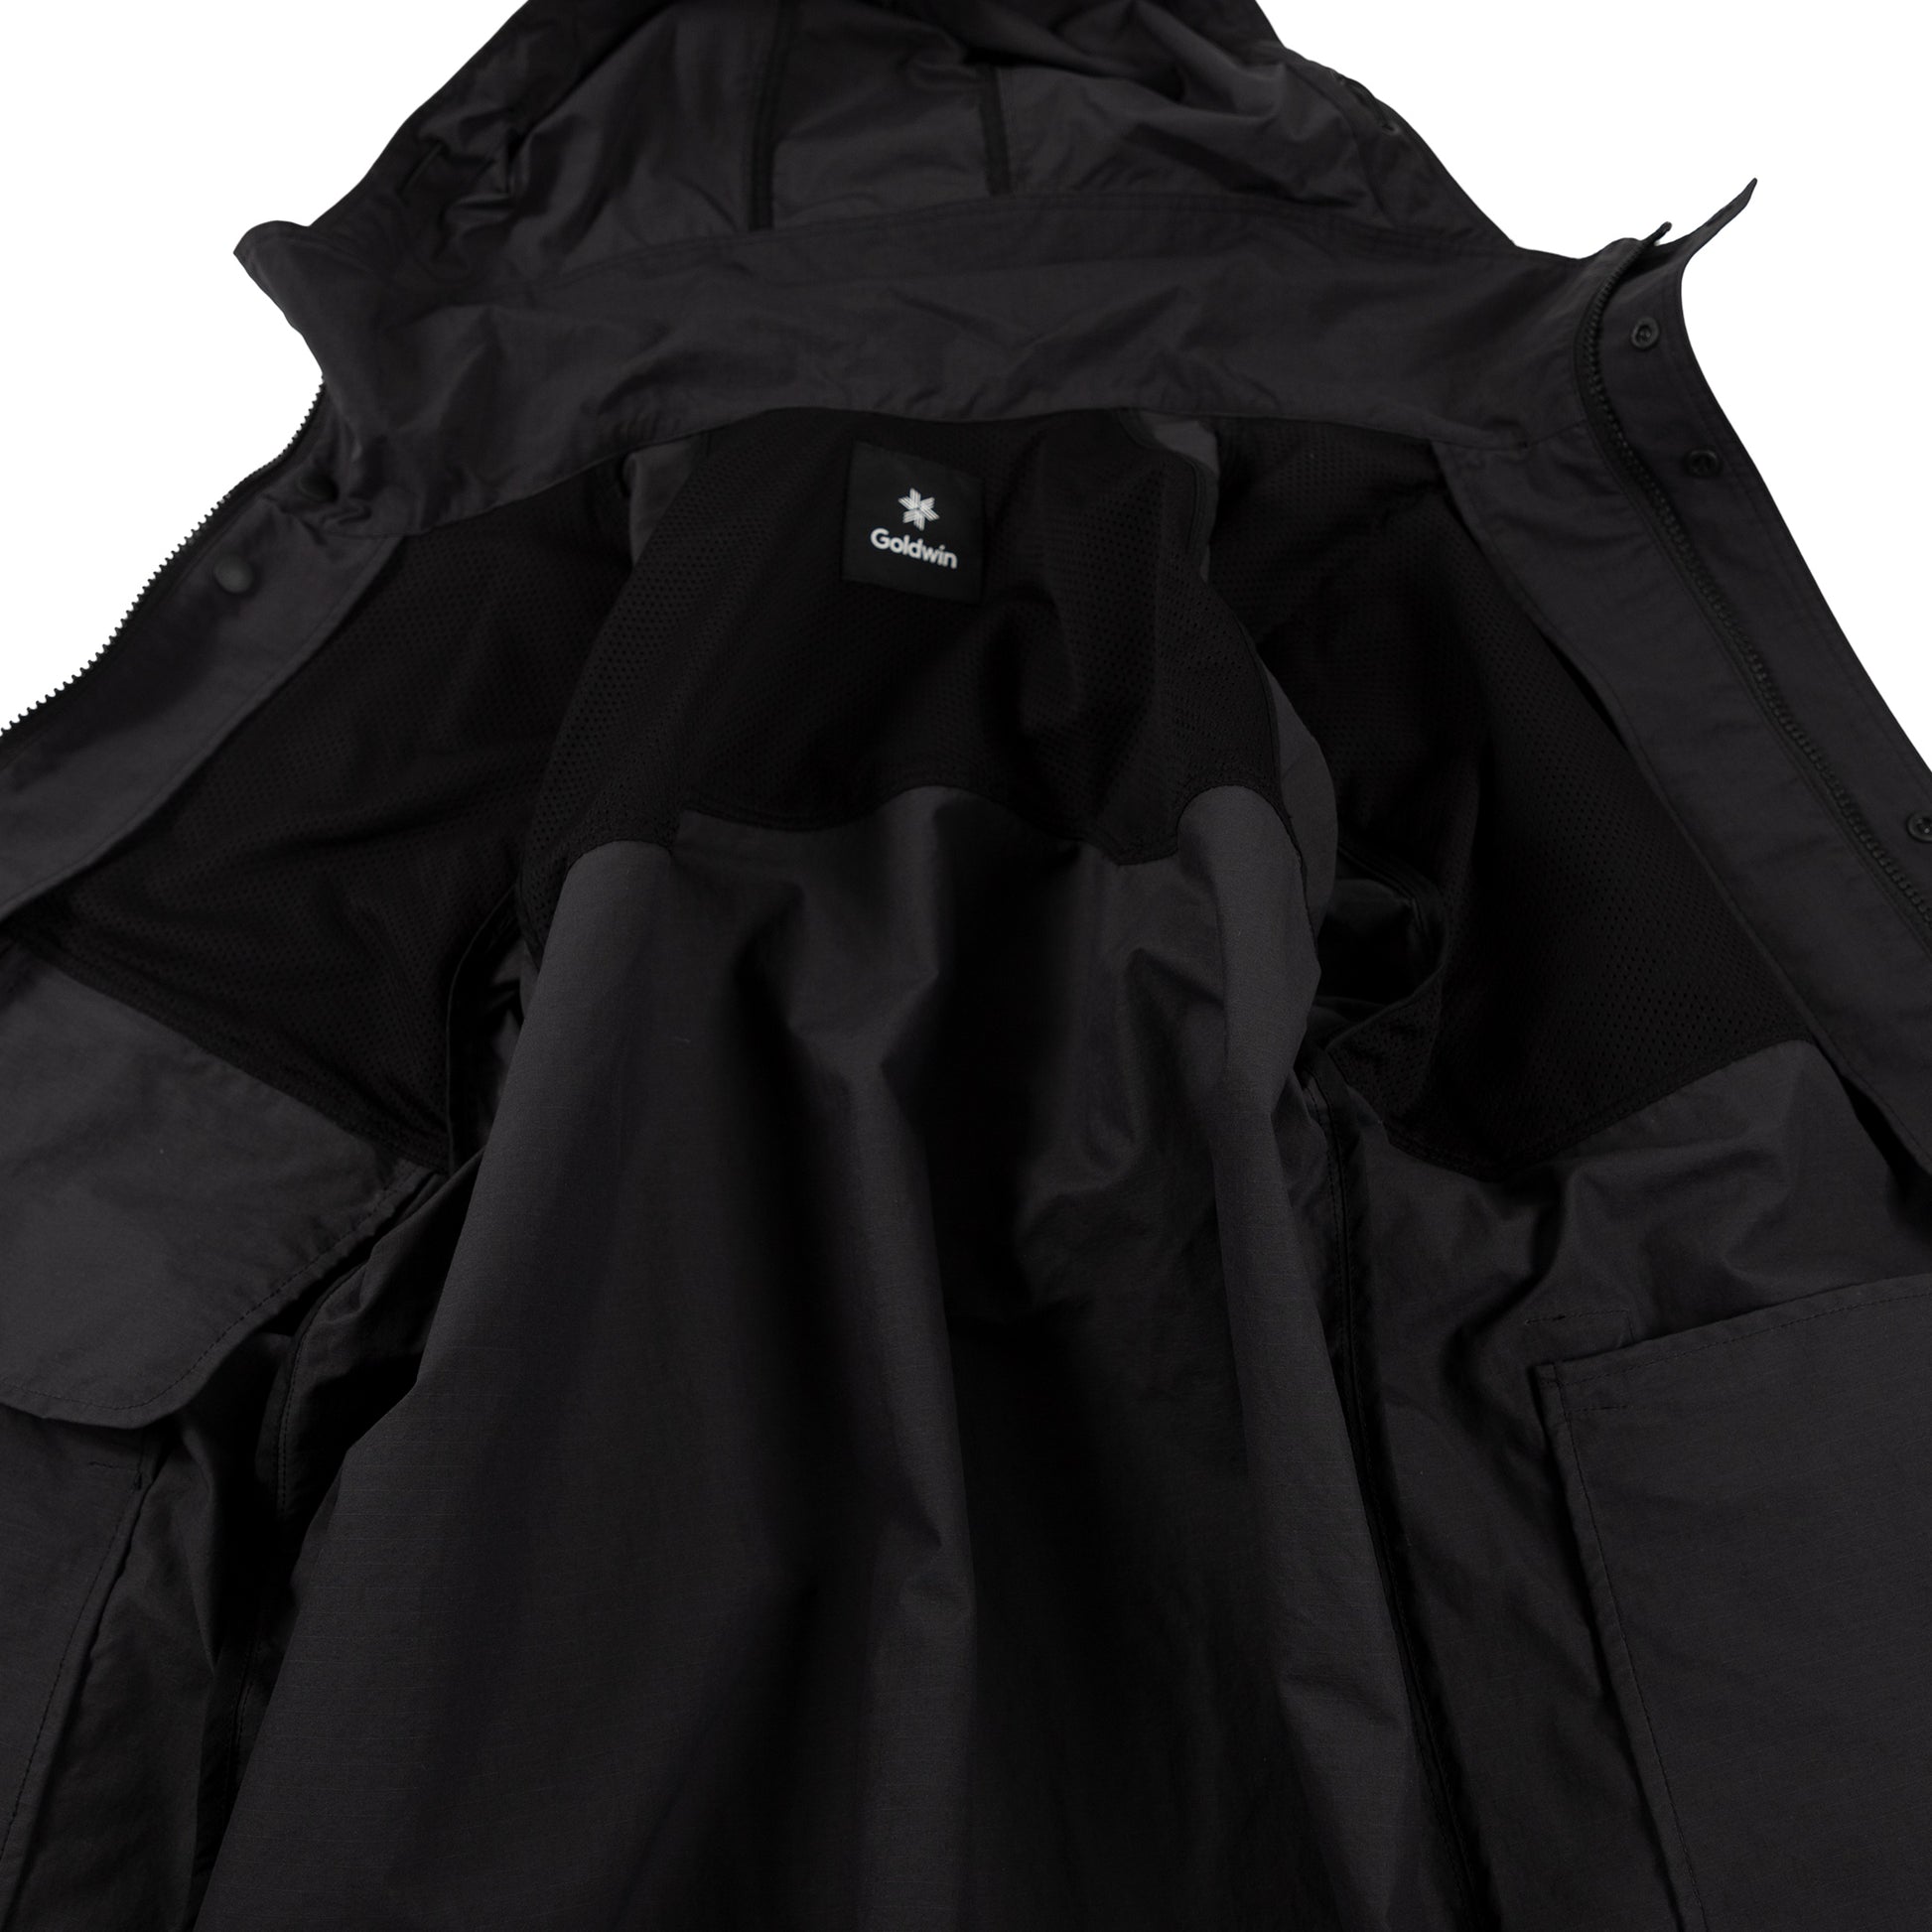 Goldwin Hooded Blouson Black rain gear all weather sportswear outerwear hooded lining detail